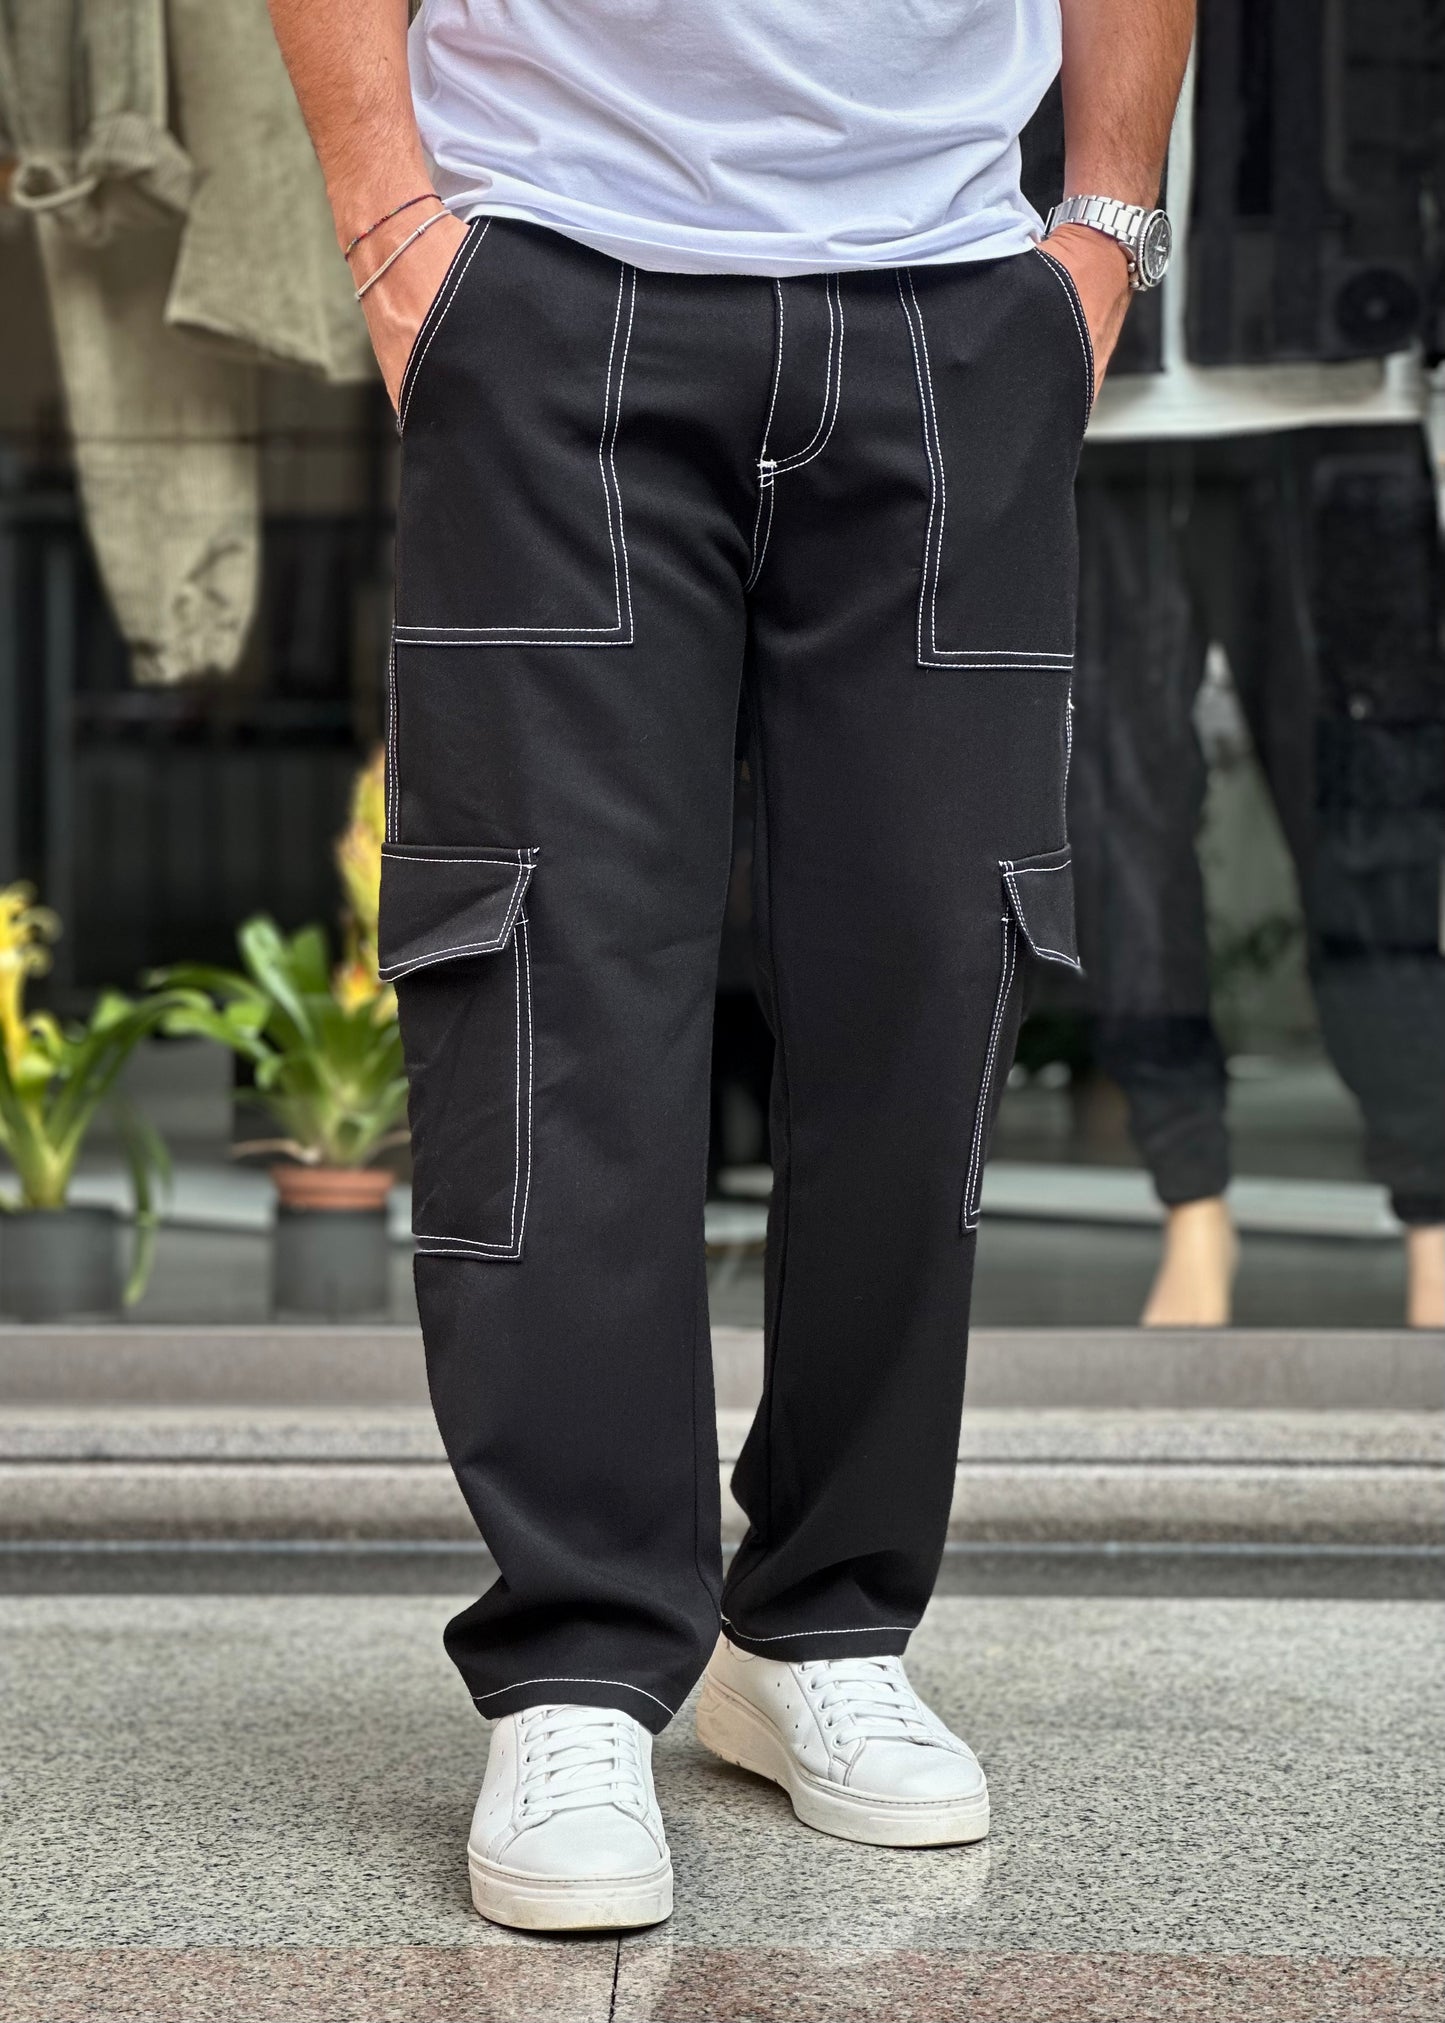 Pantalone Nero con cuciture a contrasto